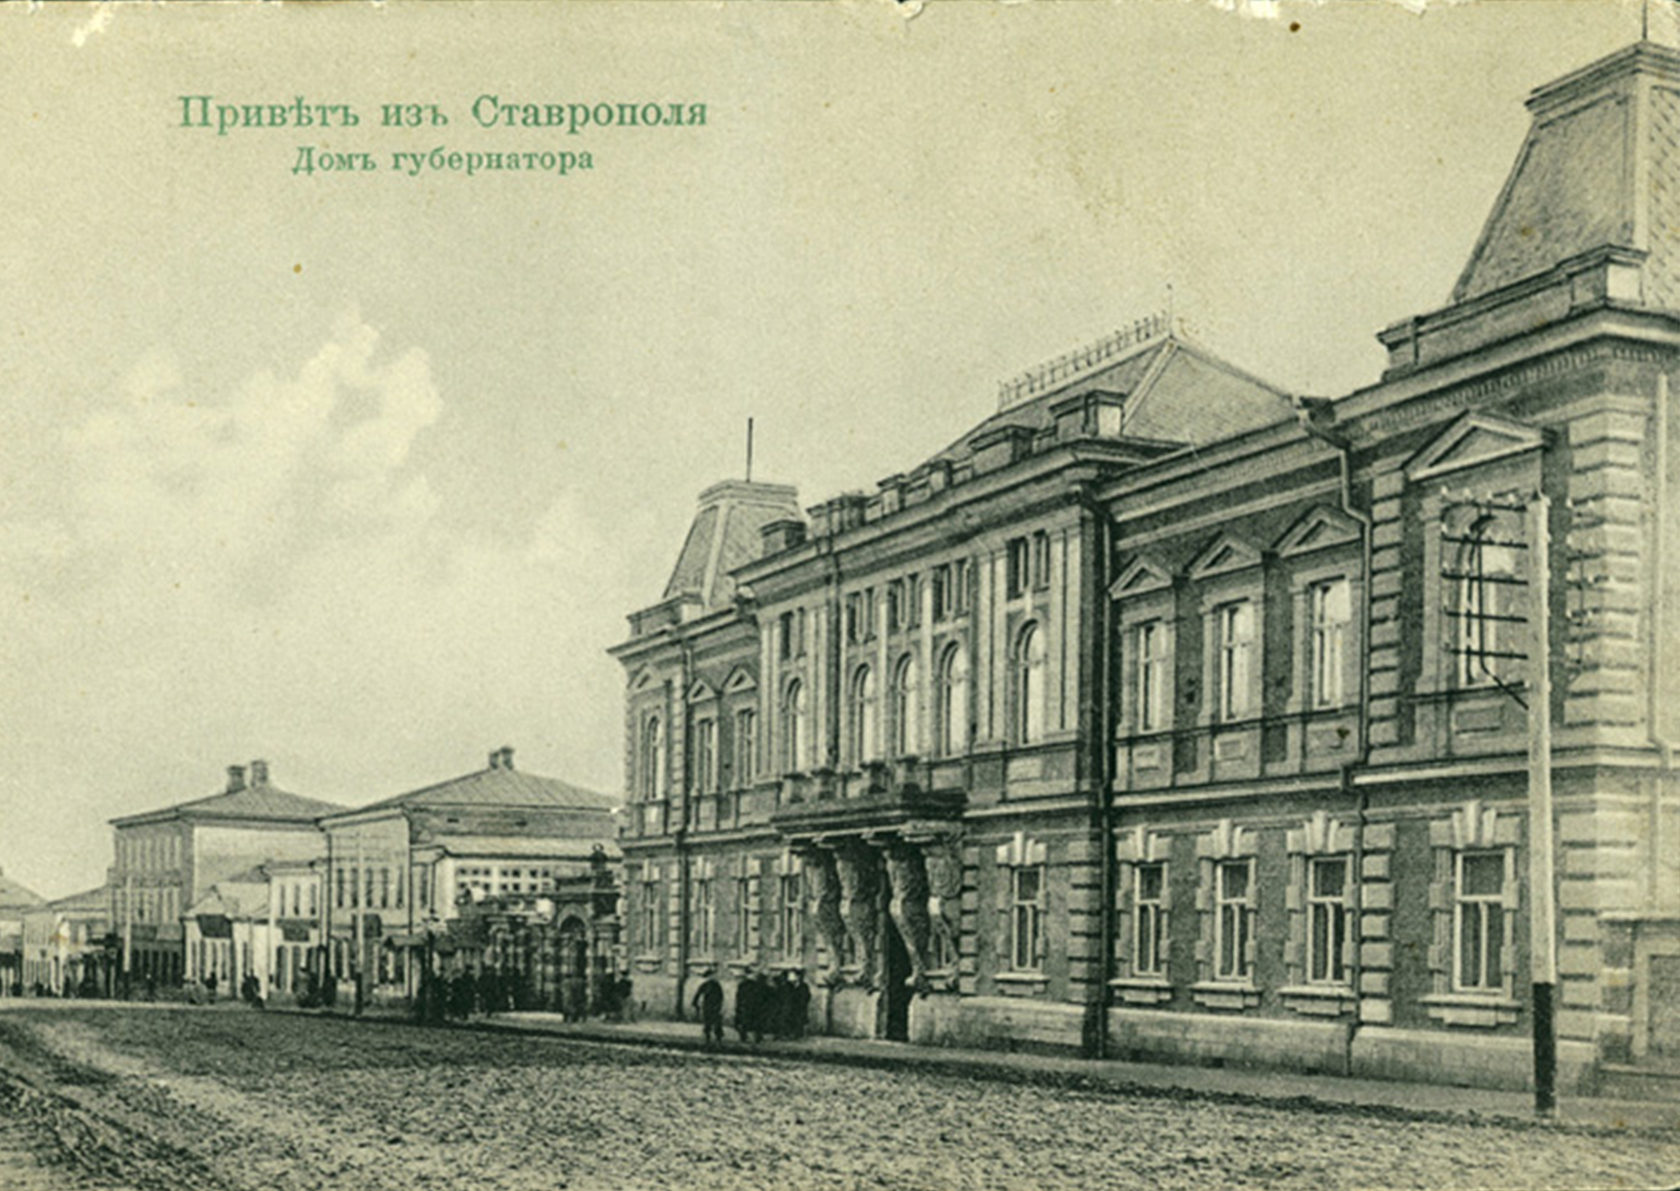 фото состаренная почтовая ретро открытка дореволюционного времени с изображением дома губернатора города Ставрополя